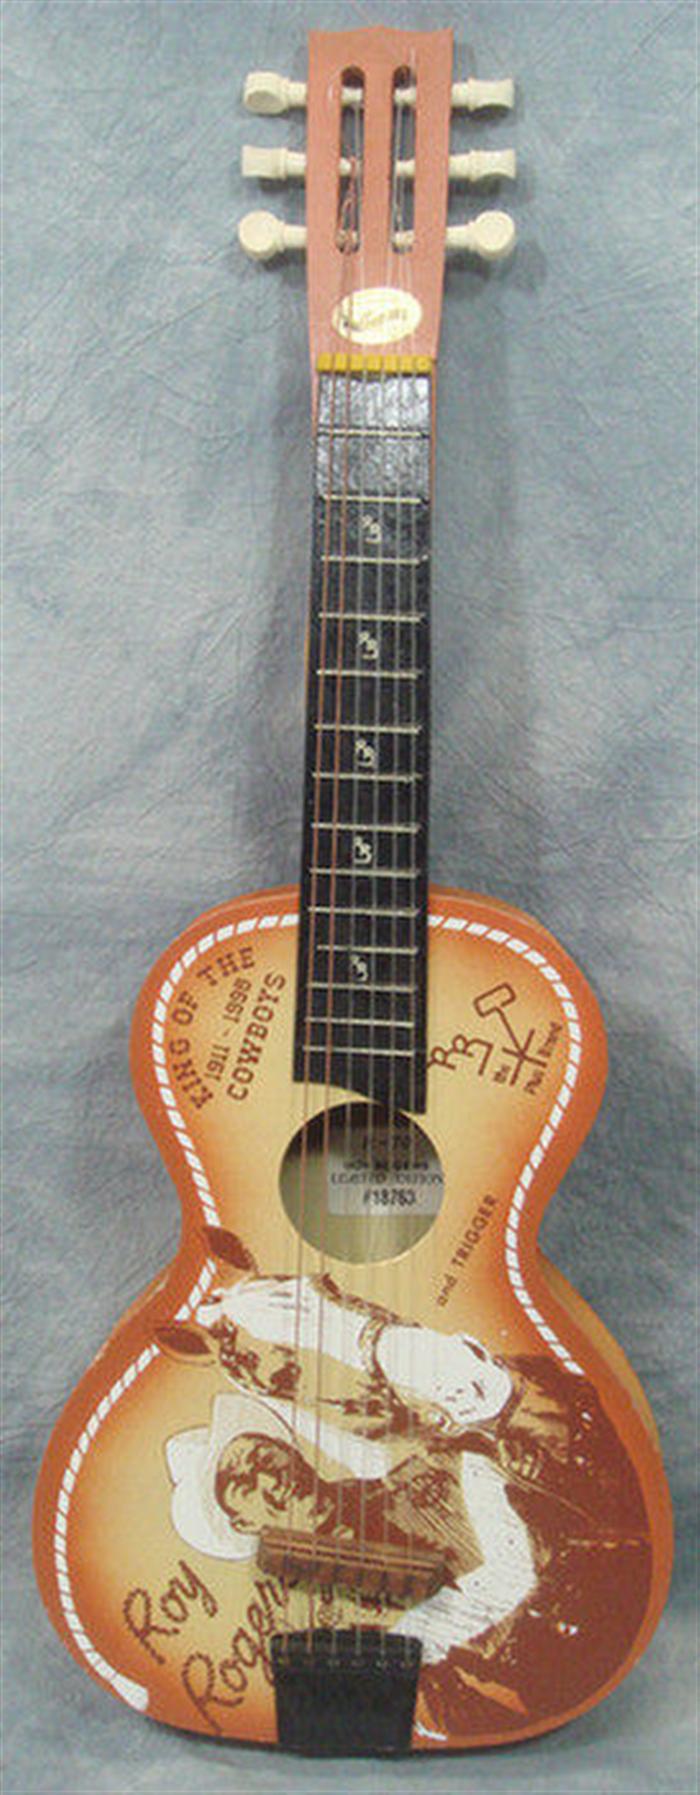 Jefferson Roy Rogers Guitar MIB, in